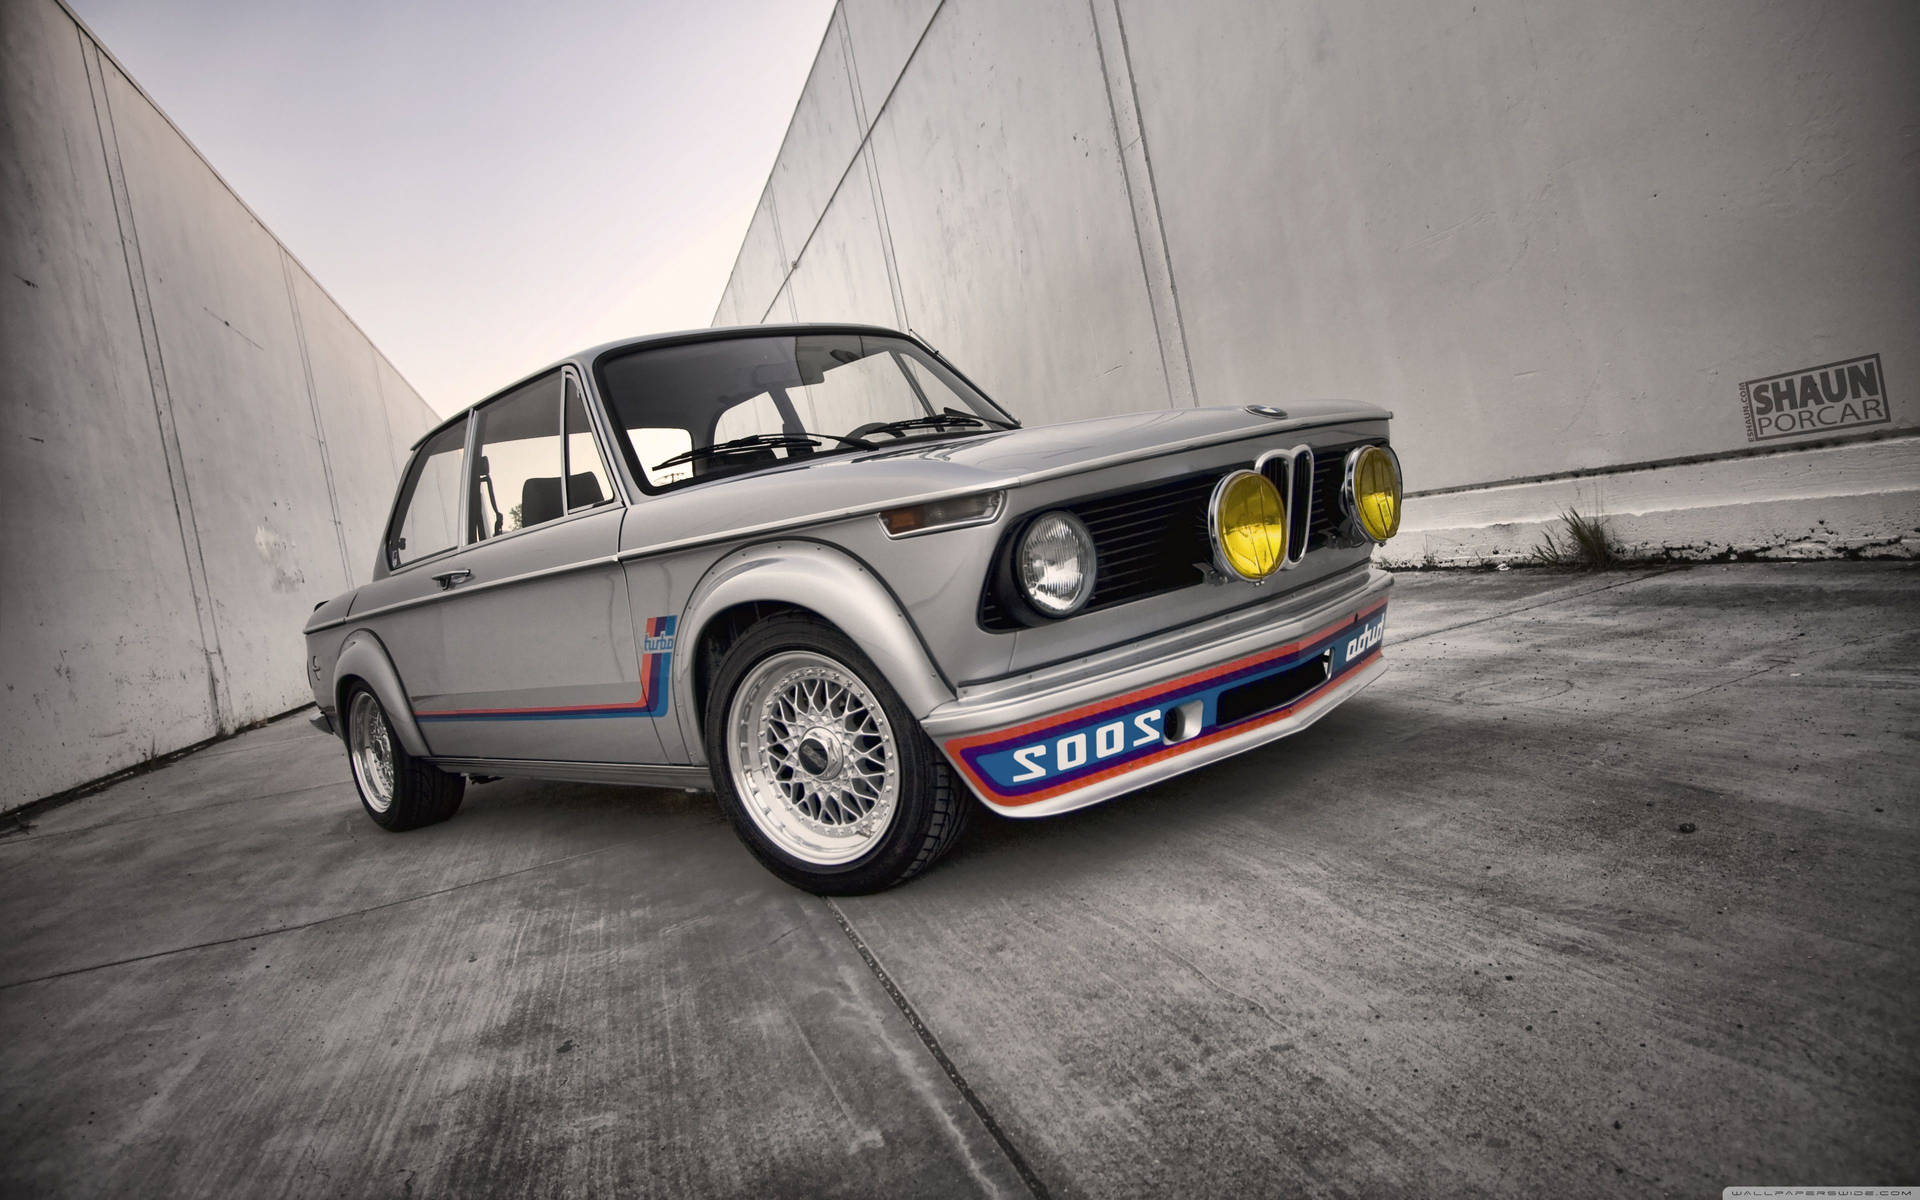 Enjoy the nostalgia of a classic BMW. Wallpaper